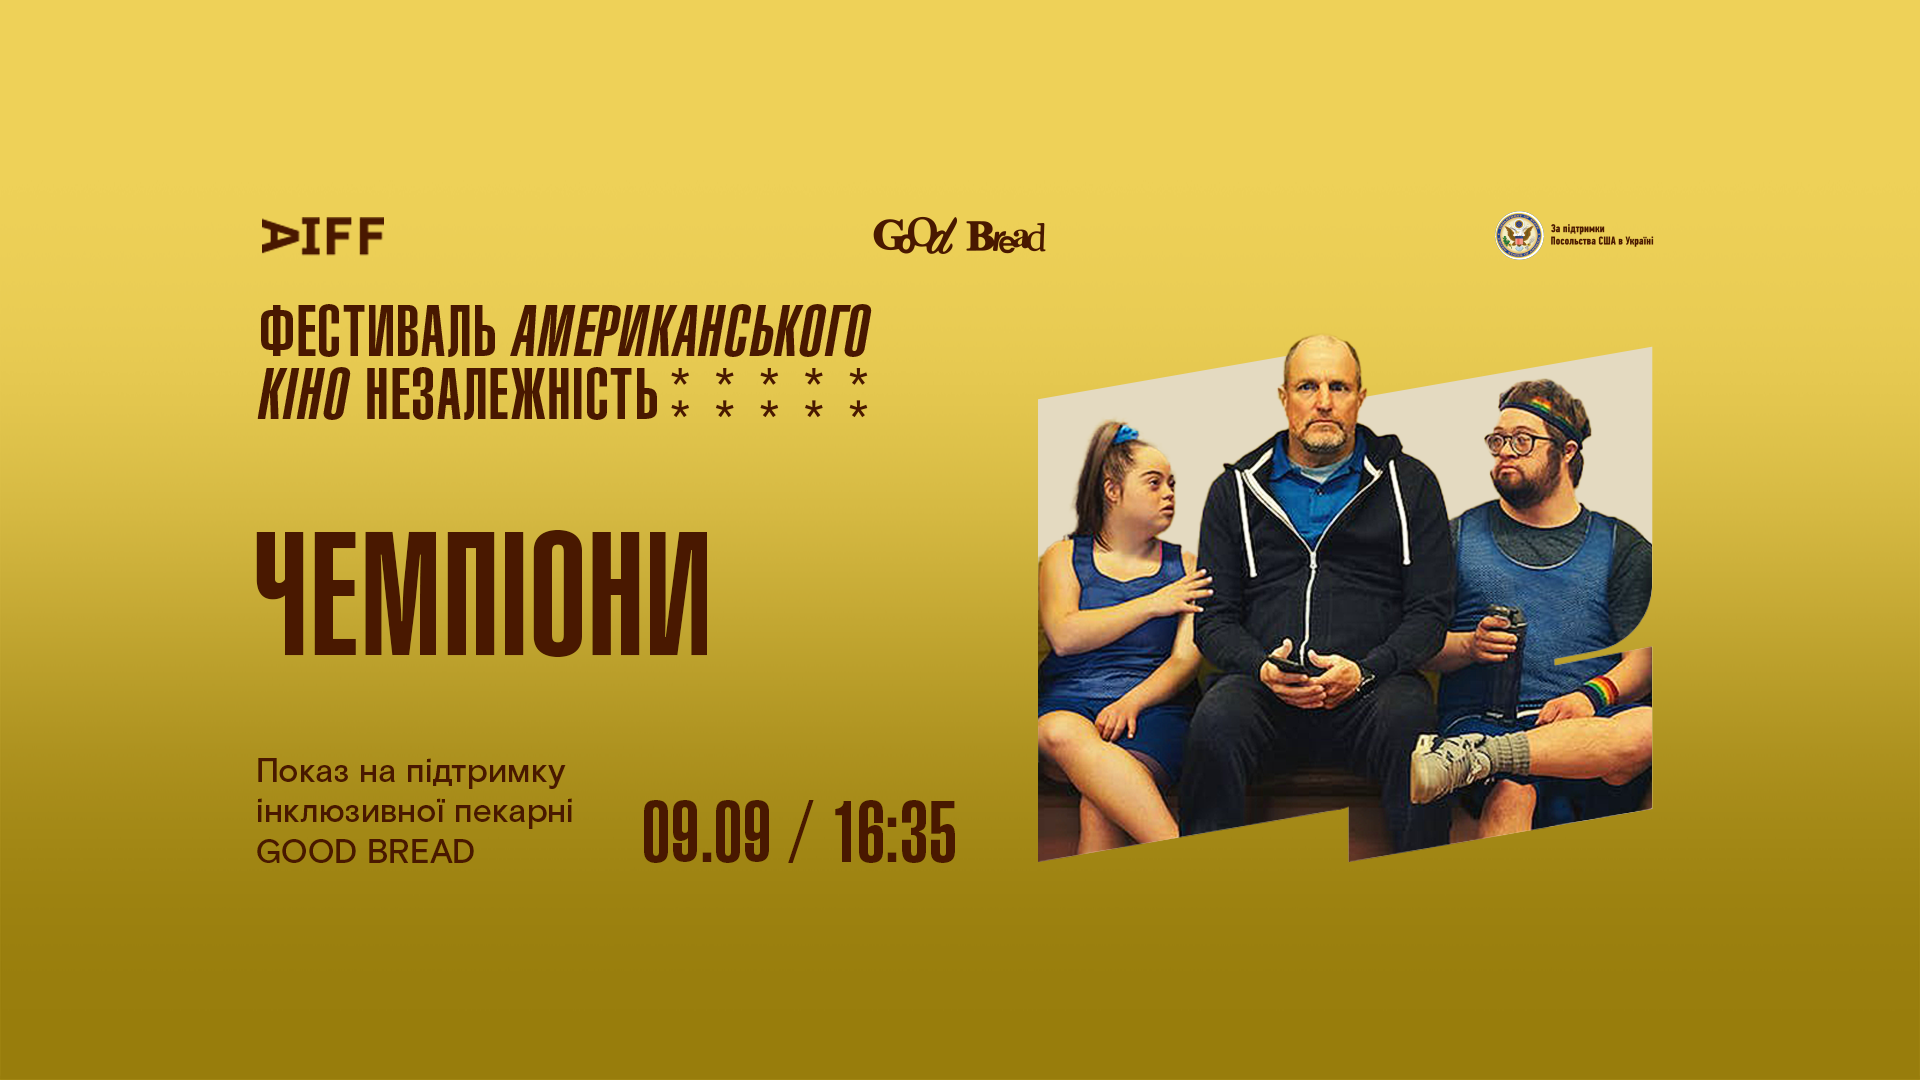 У Києві покажуть новий фільм з Вуді Гаррельсоном на підтримку інклюзивної пекарні